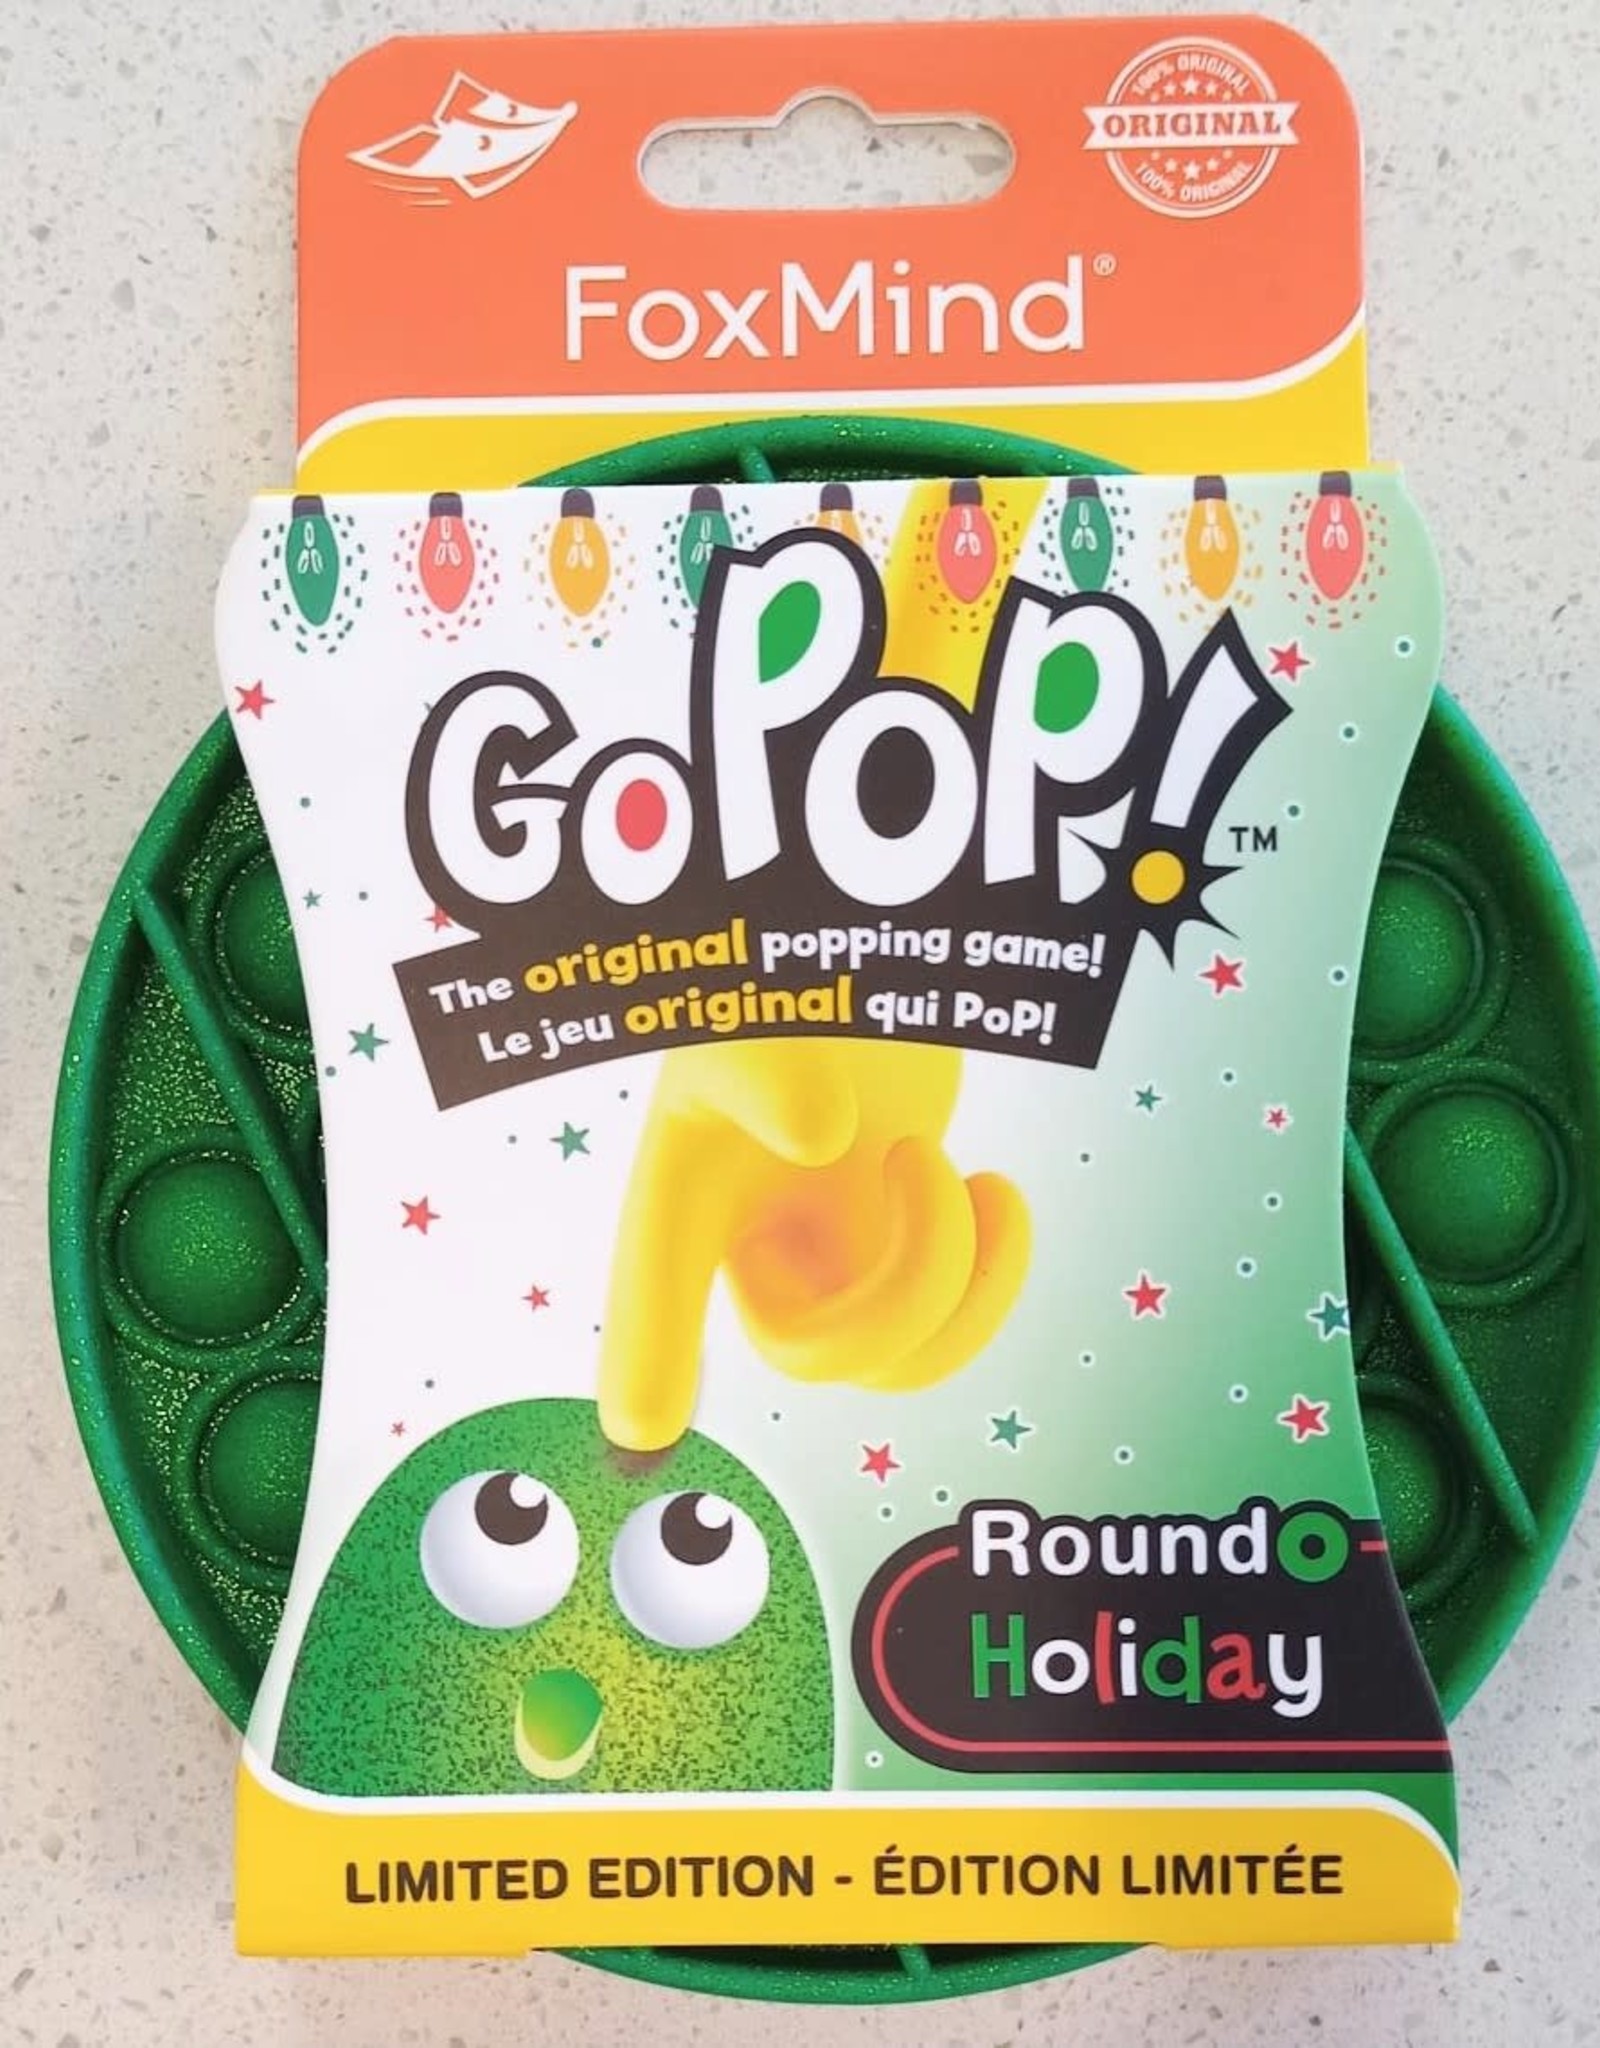 Foxmind Go Pop Roundo - Holiday Green